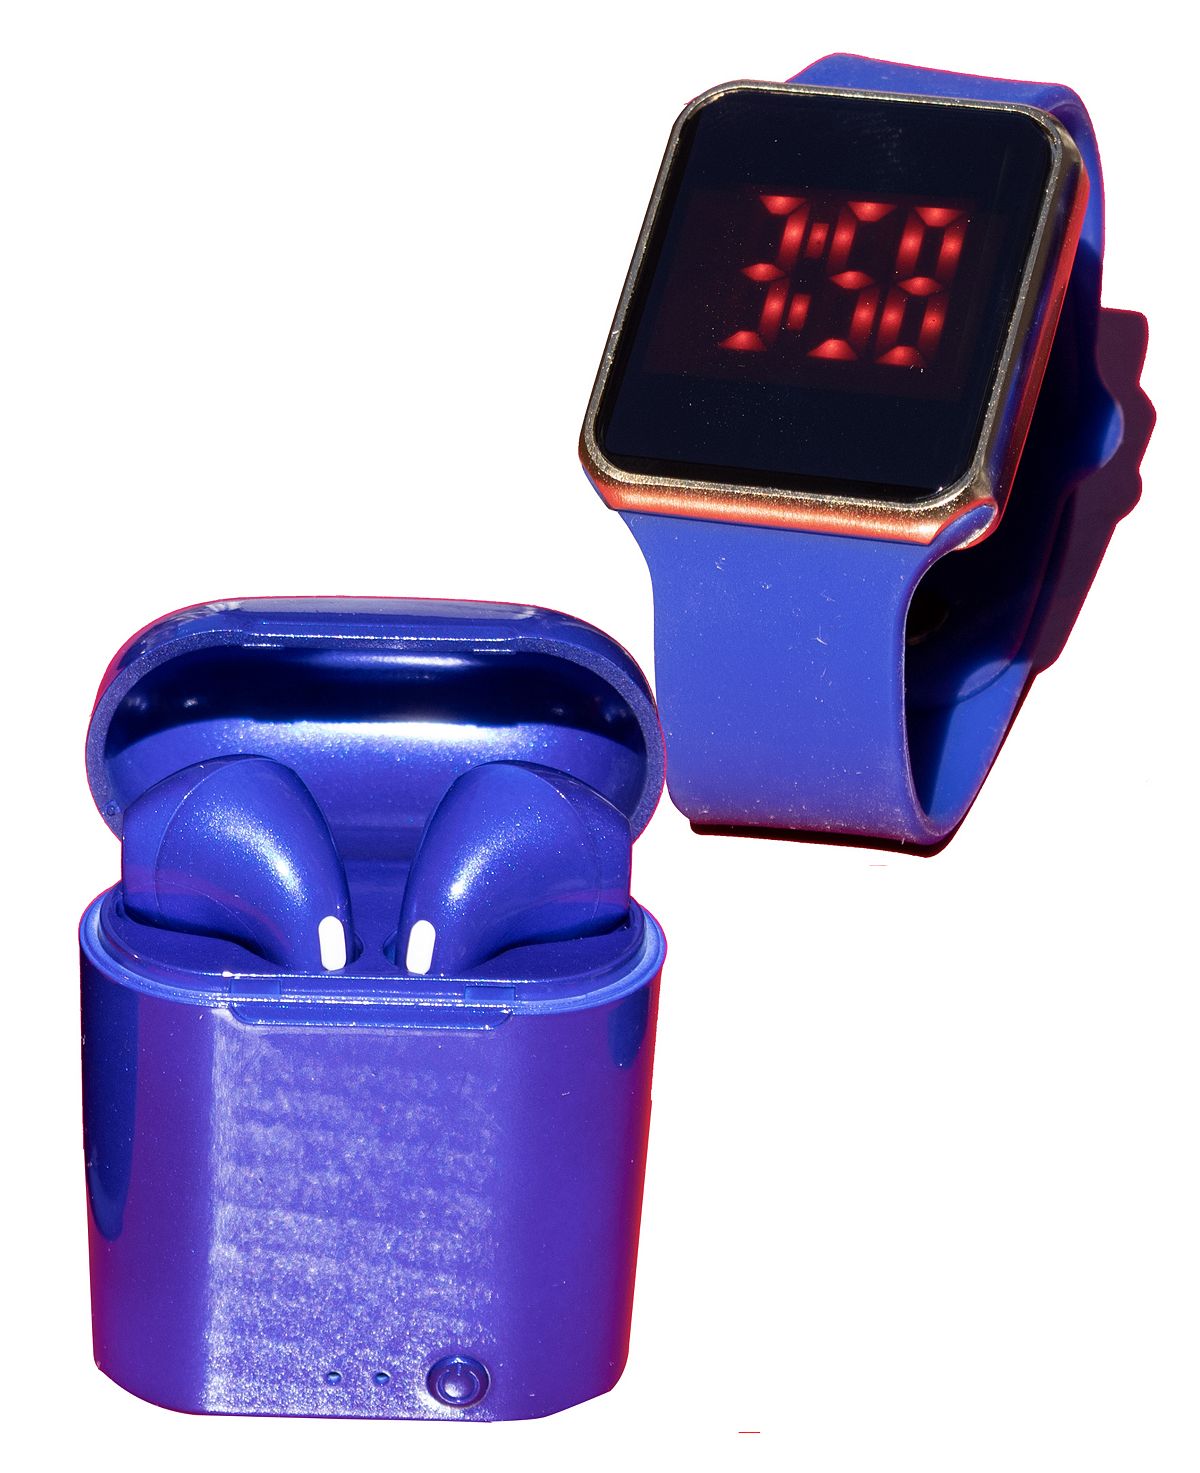 Унисекс светодиодные сенсорные часы и беспроводные наушники с портативным чехлом для зарядки Ztech цена и фото